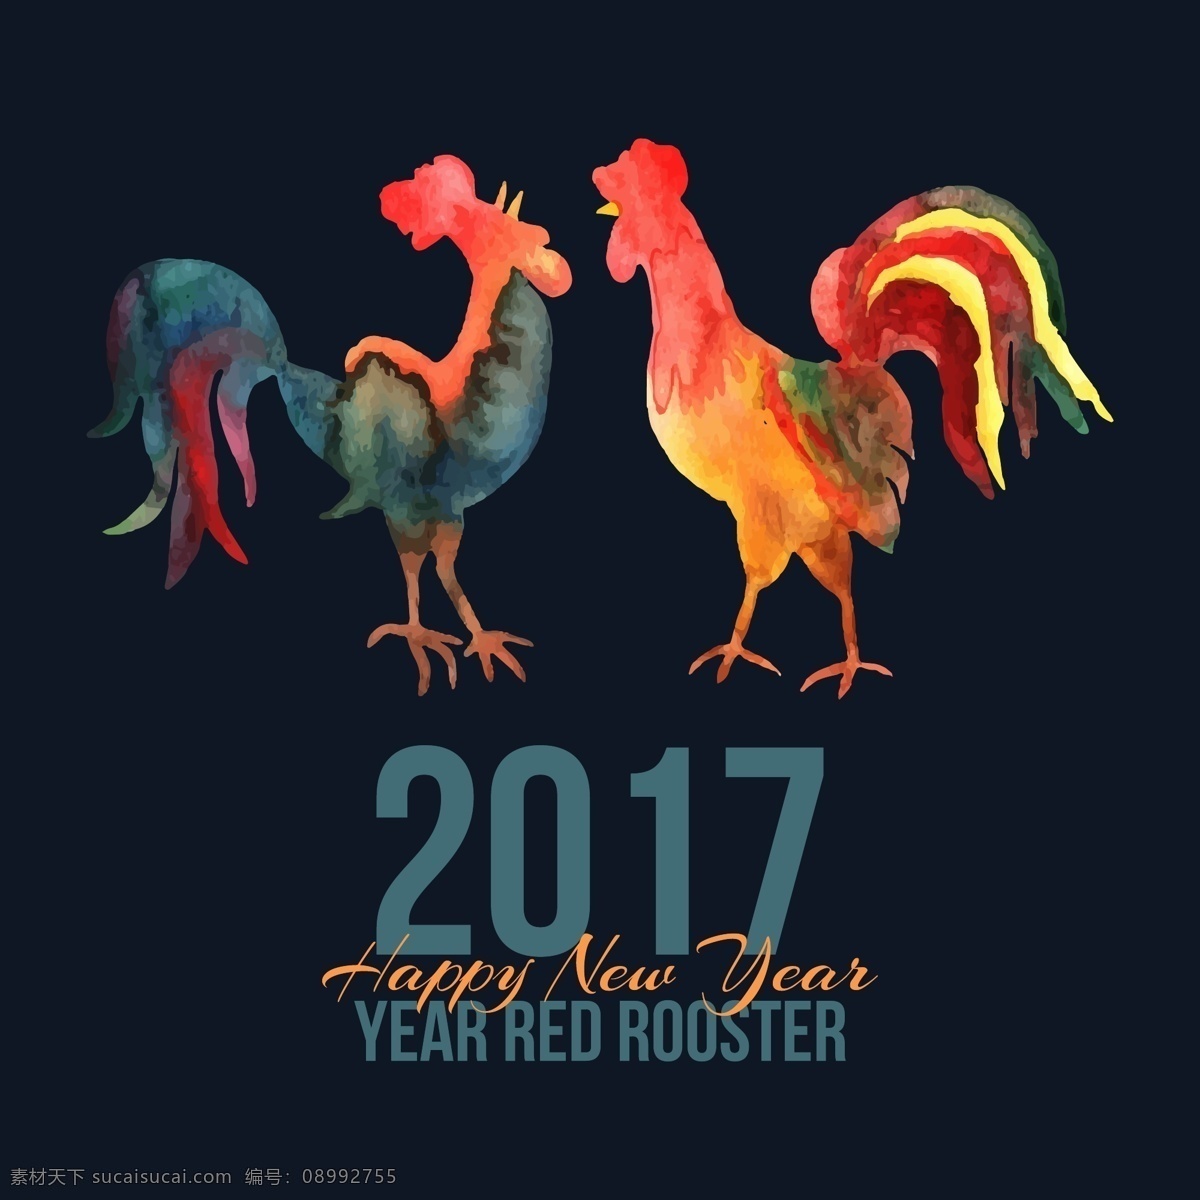 创意 时尚 2017 鸡年 主题 海报 设计素材 矢量背景 矢量素材